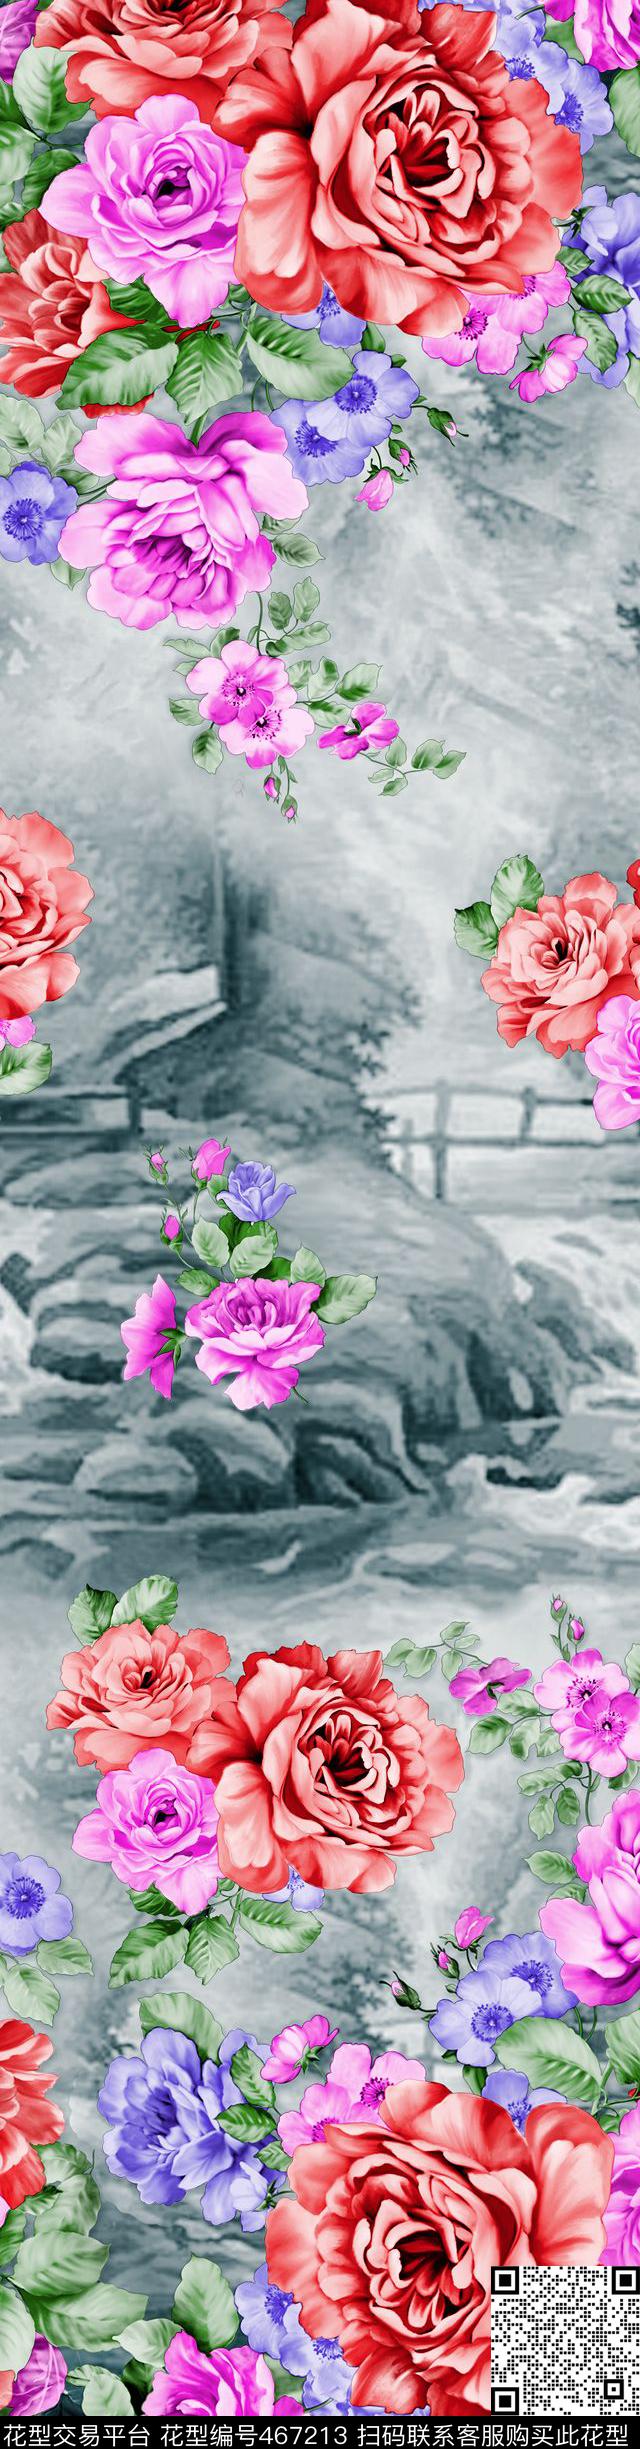 时尚窗帘花型 家纺花型 流行窗帘花型 - 467213 - 时尚窗帘花型 家纺花型 流行窗帘花型 - 传统印花花型 － 窗帘花型设计 － 瓦栏